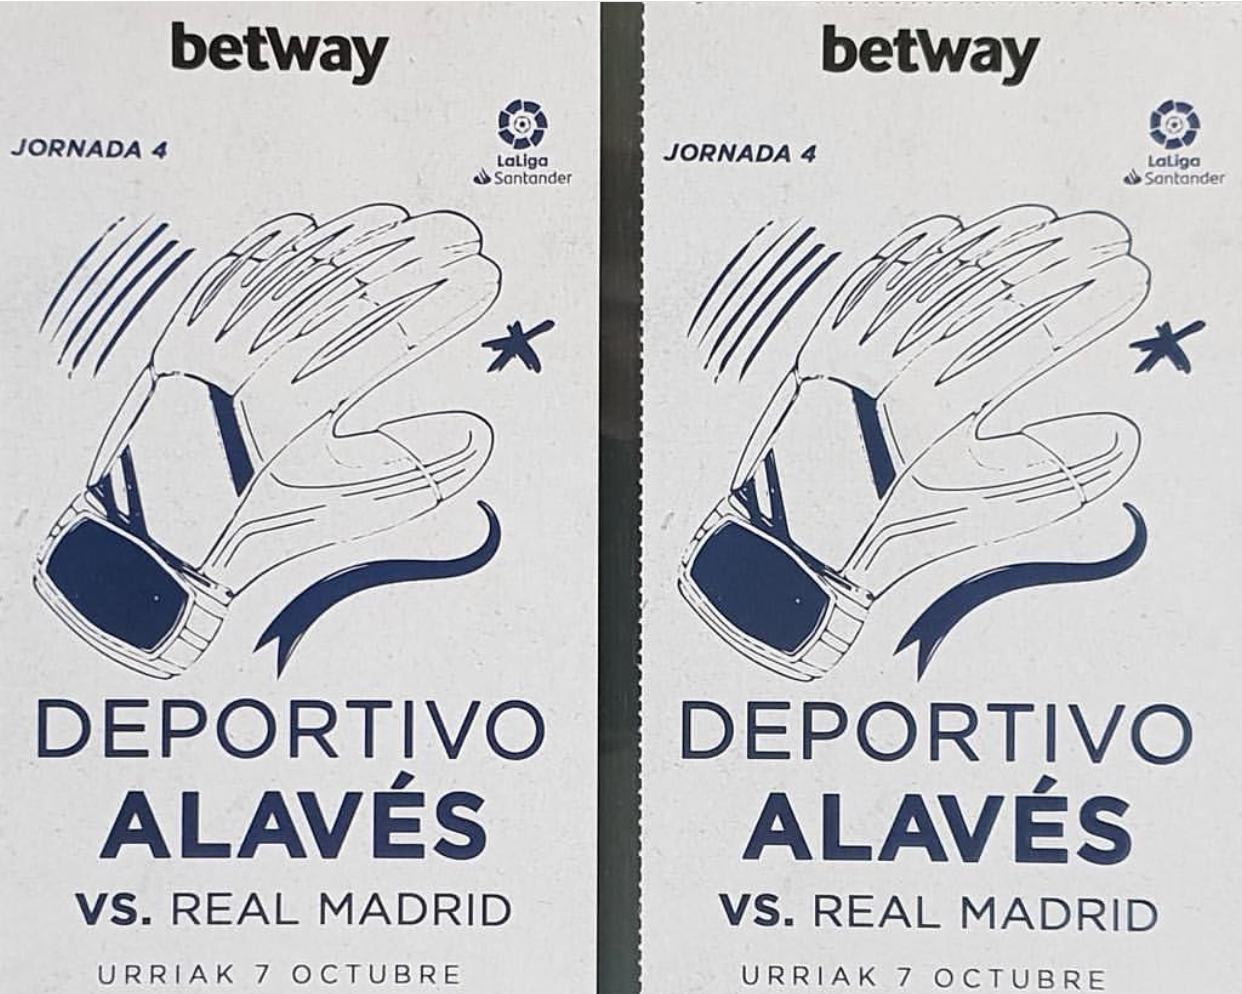 Quieres ver gratis el Alaves-Real Madrid? Entra rápido al Instagram de McDonald’s Vitoria-Gasteiz y contesta a una fácil pregunta sobre Fútbol Sala!!!!